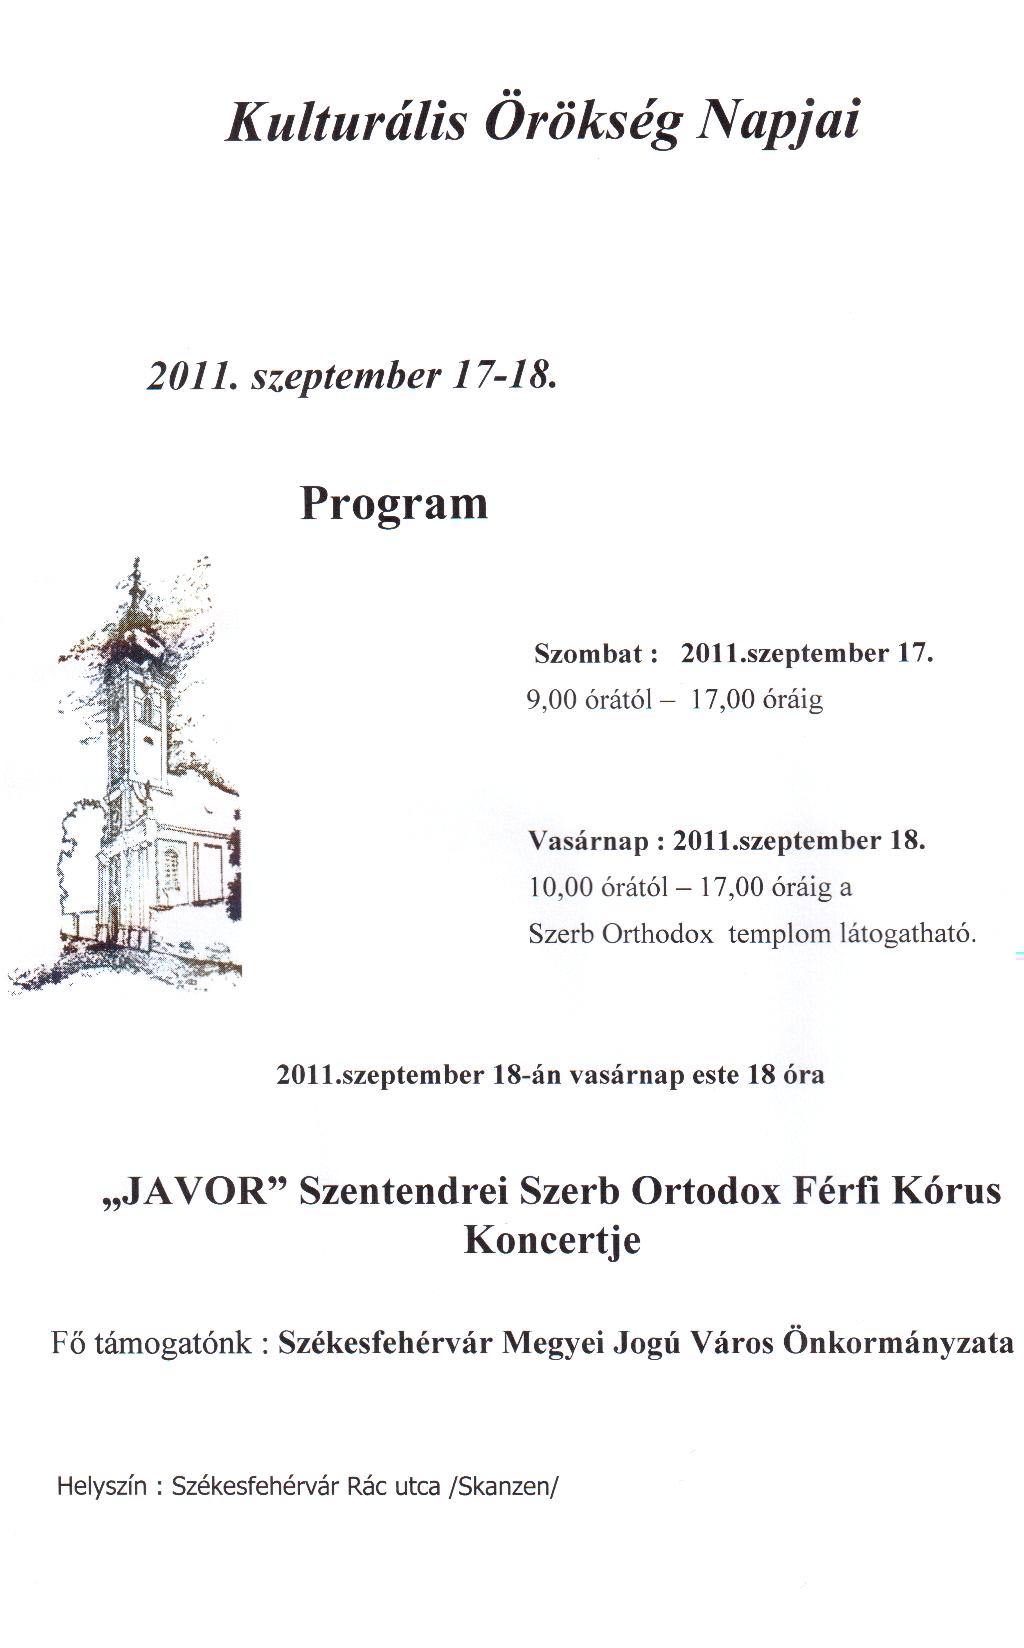 Kulturális Örökség Napjai 2011-09-17-18.